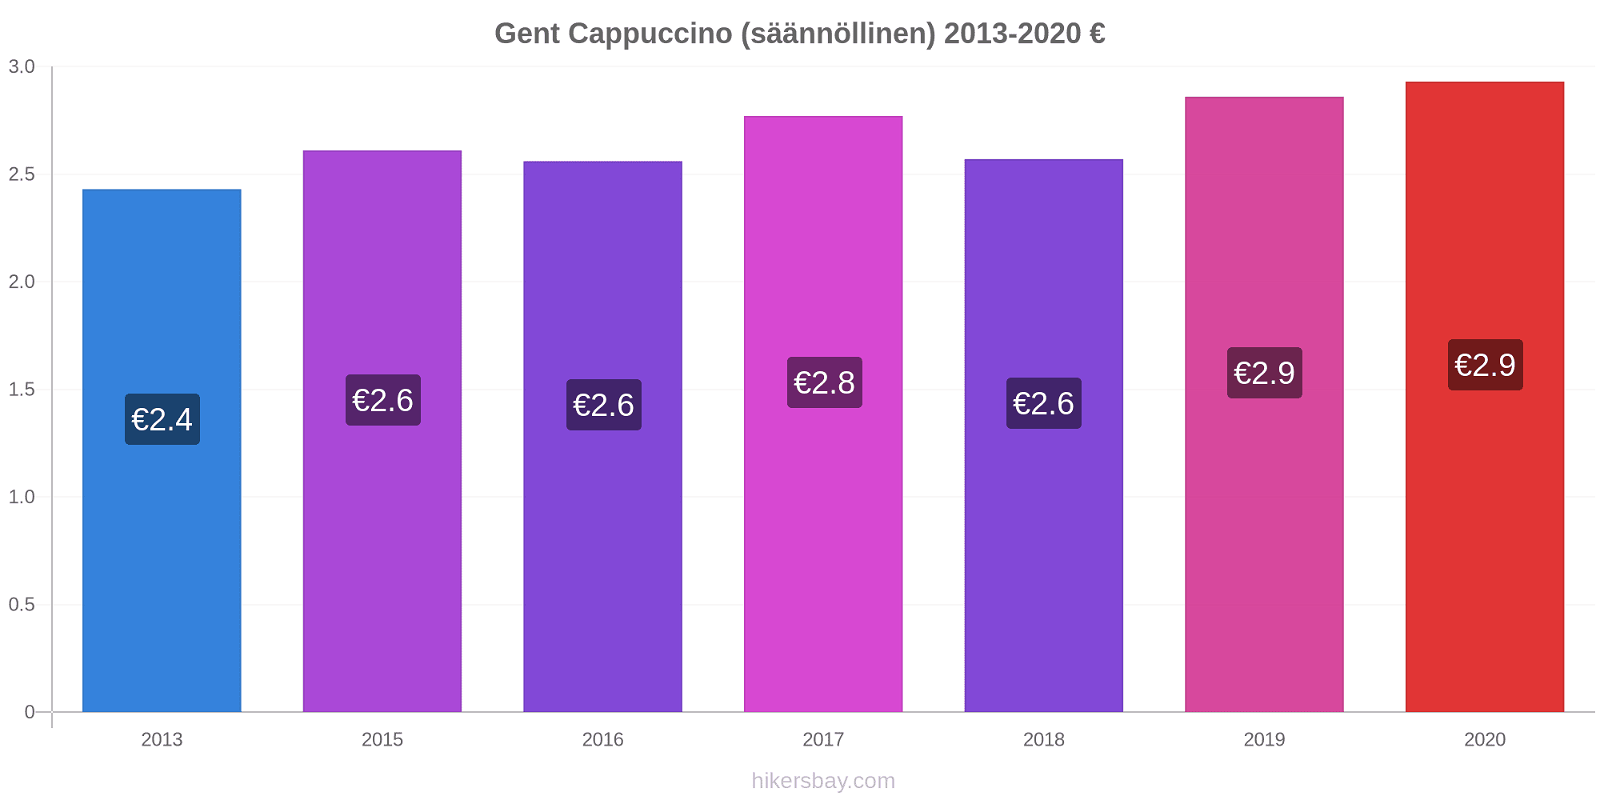 Gent hintojen muutokset Cappuccino (säännöllinen) hikersbay.com